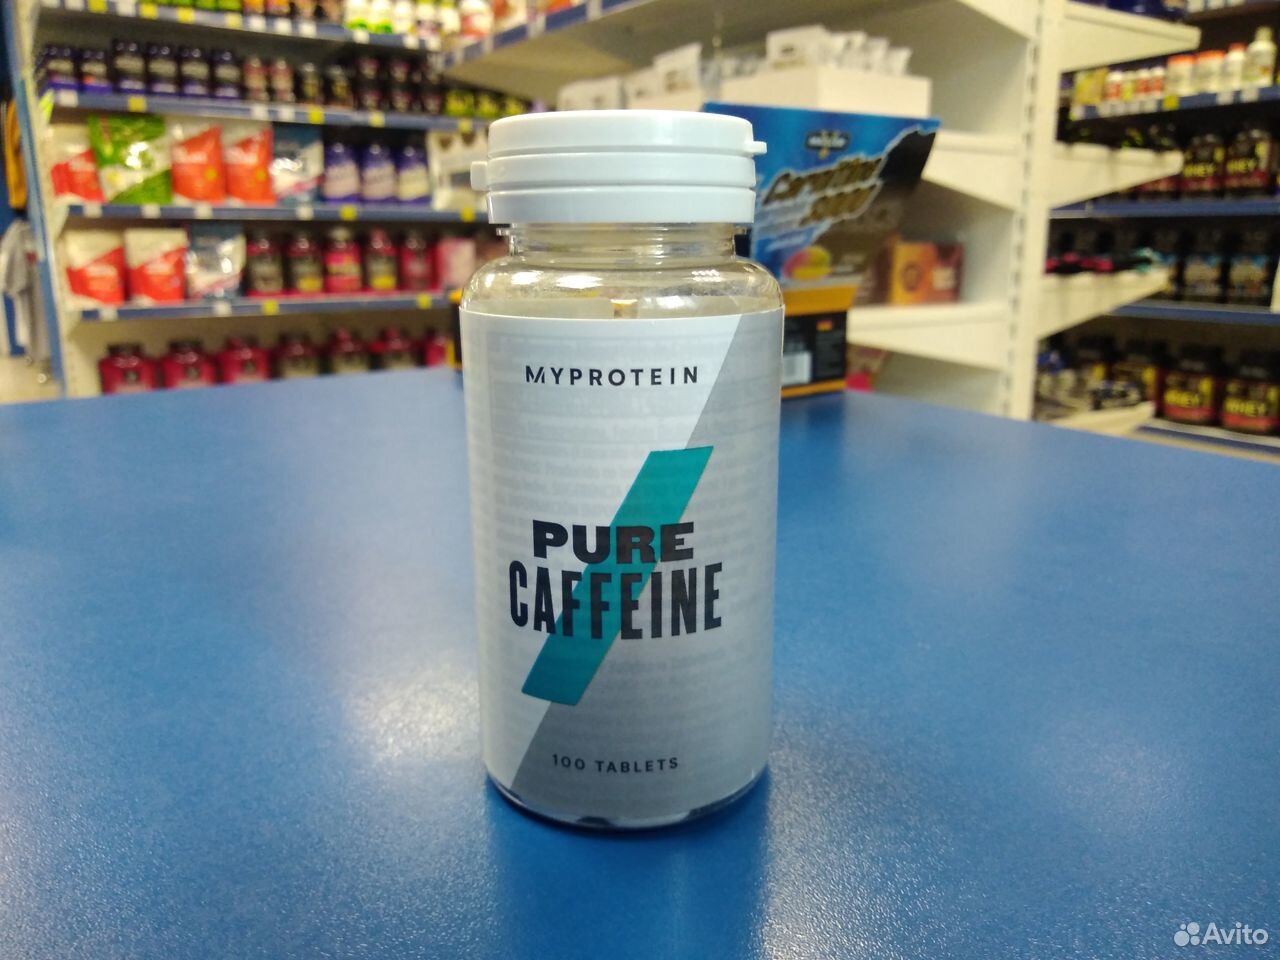 Myprotein, Pure Caffeine, 100таб 89044961000 купить 1